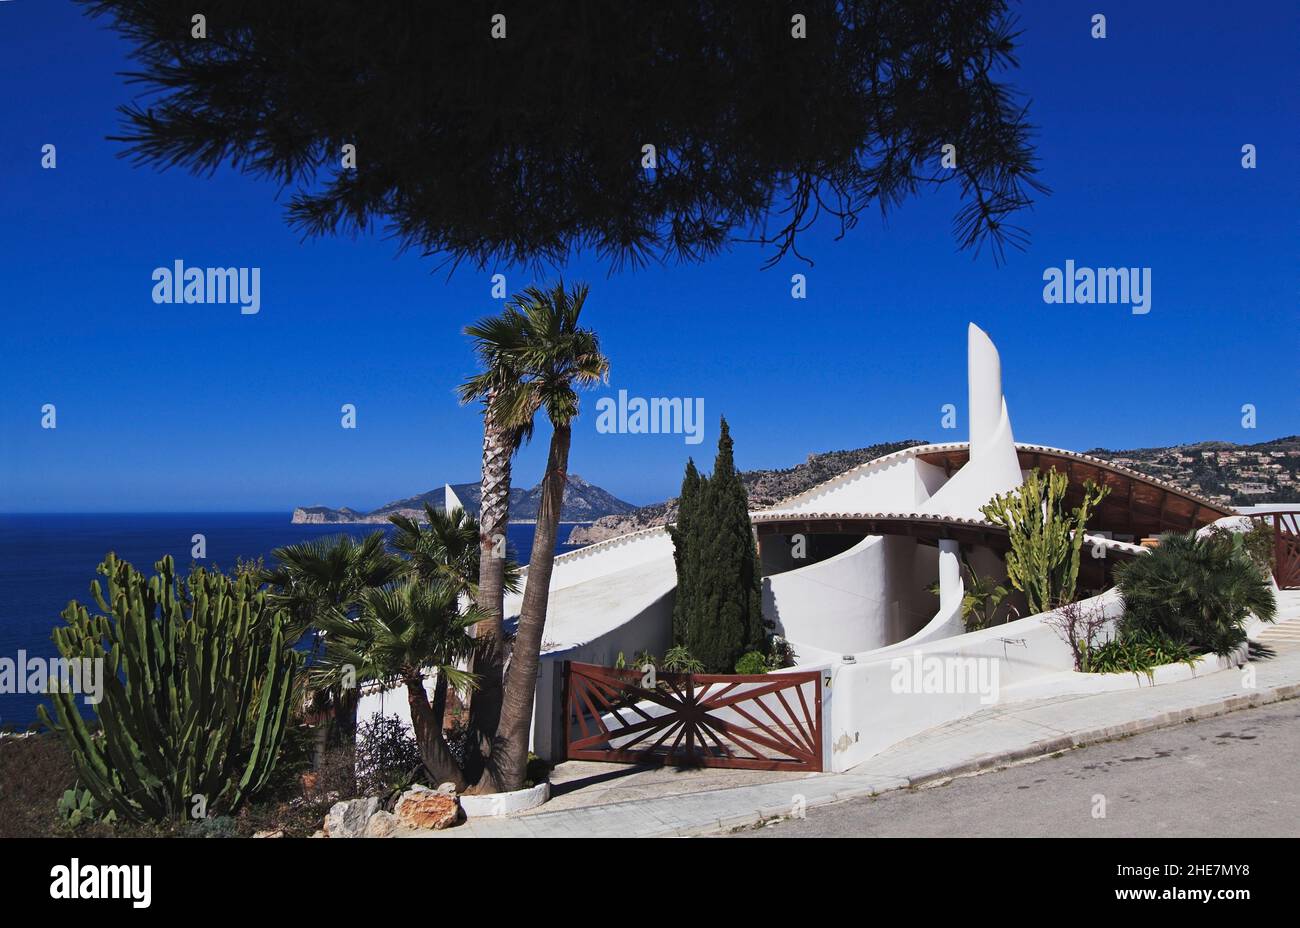 Port Andratx, luxuriöse Villen, Mallorca, Balearen, Spanien, Europa | Port Andratx, luxury villas, Mallorca, Balearic Islands, Spain, Europe Stock Photo